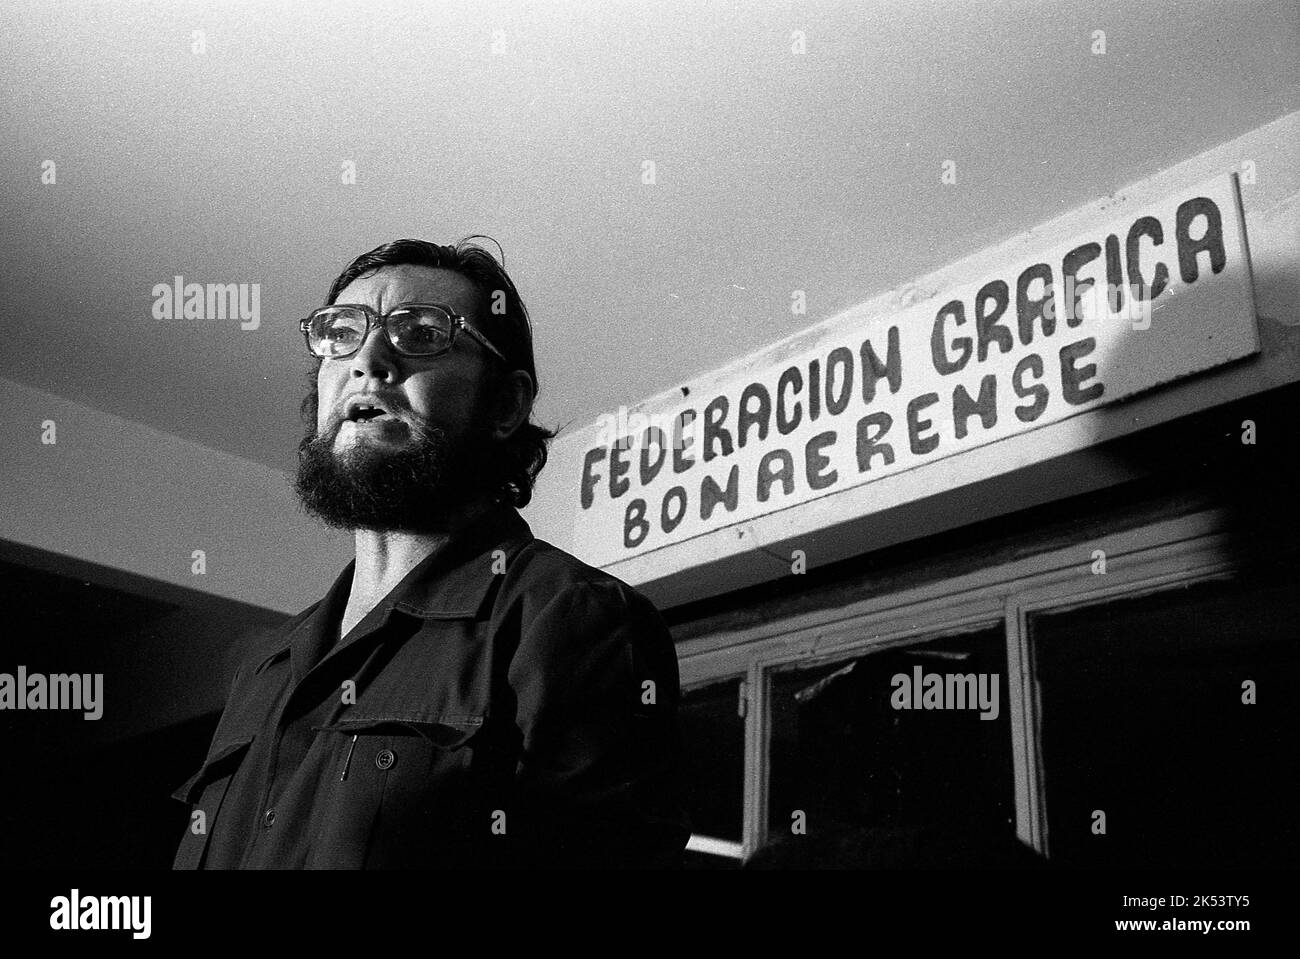 Julio Cortazar, écrivain argentin de fiction, à la Federacion Grafica Bonaerense (un syndicat d'imprimeurs), après l'élection de Hector J. Campora comme président de l'Argentine, Buenos Aires, mars 1973 Banque D'Images